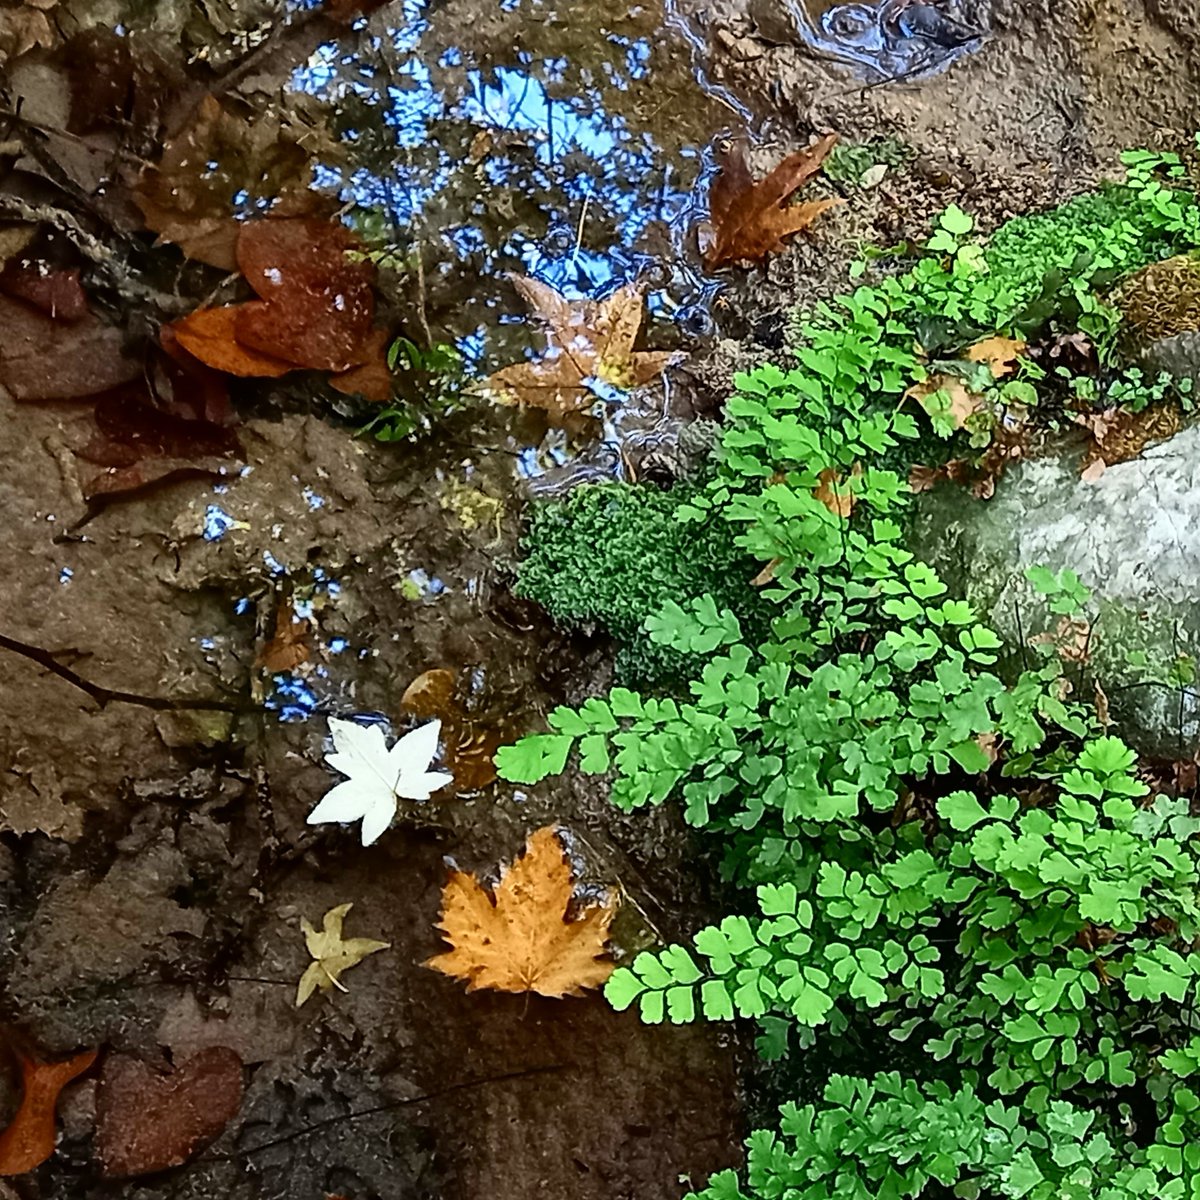 Sonbahar, su kenarında ilkbaharla buluşmuş gibiydi...

#sonbahar #doğa #doğafotoğrafları
#autumn #nature #naturephotography 
#alisefünç